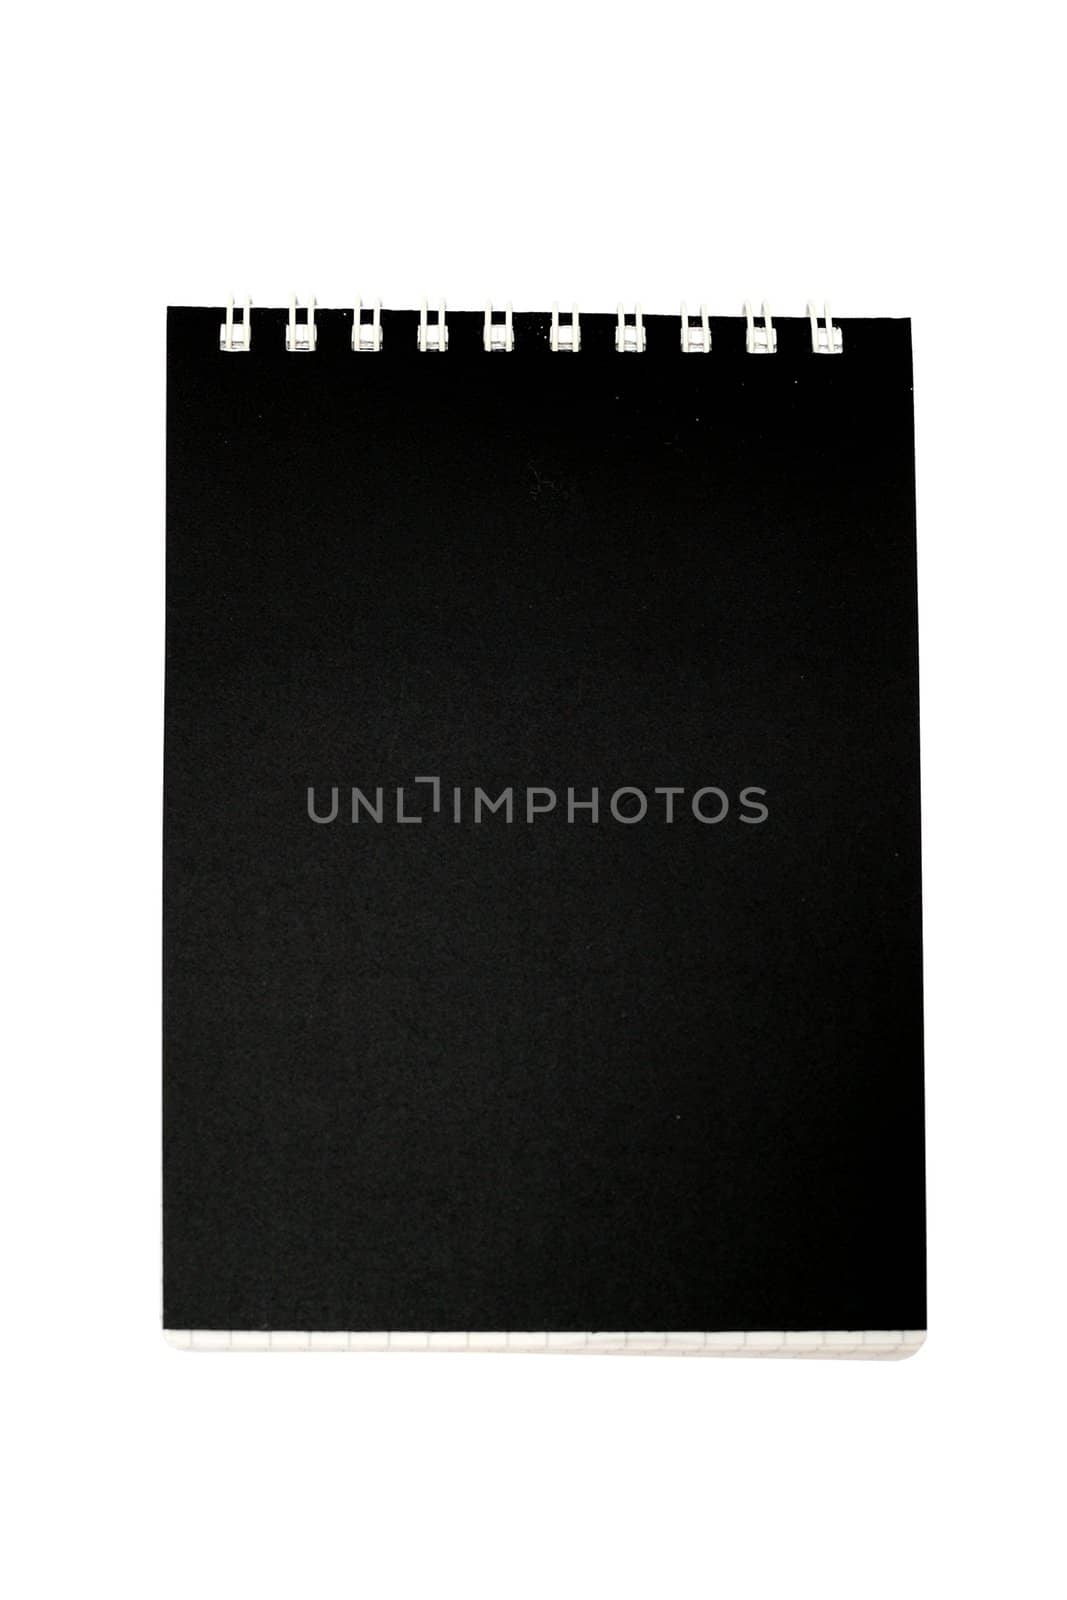 Black notebook by velkol